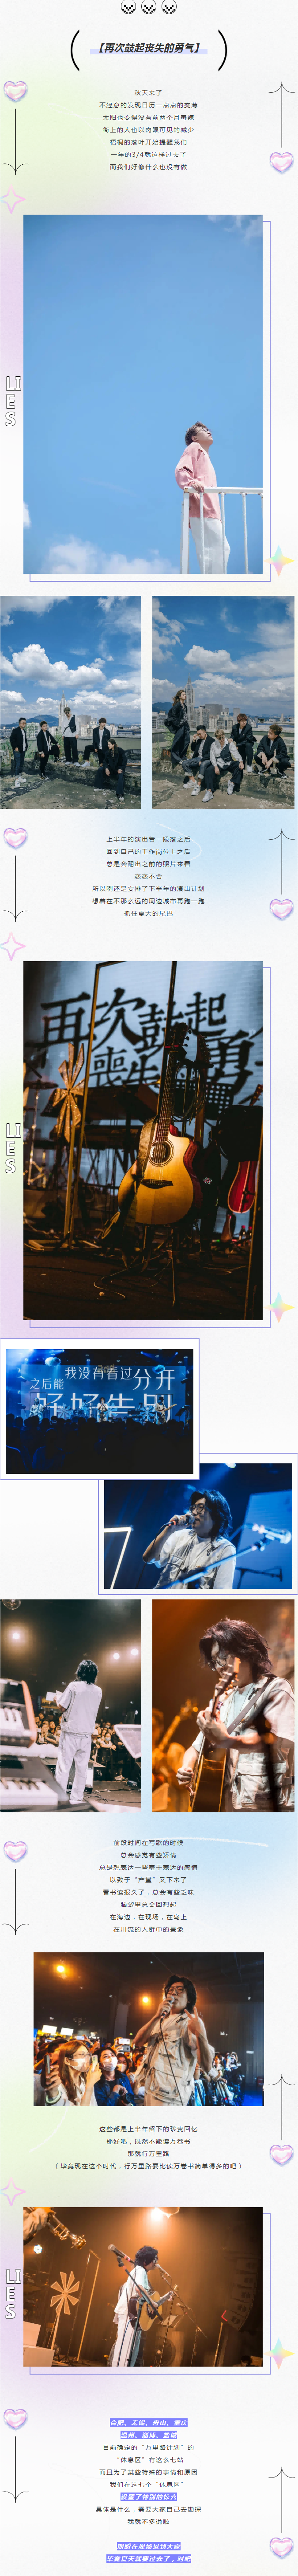 刘莱斯「再次鼓起丧失的勇气」 2023巡演舟山站——飓风音乐现场(1).png